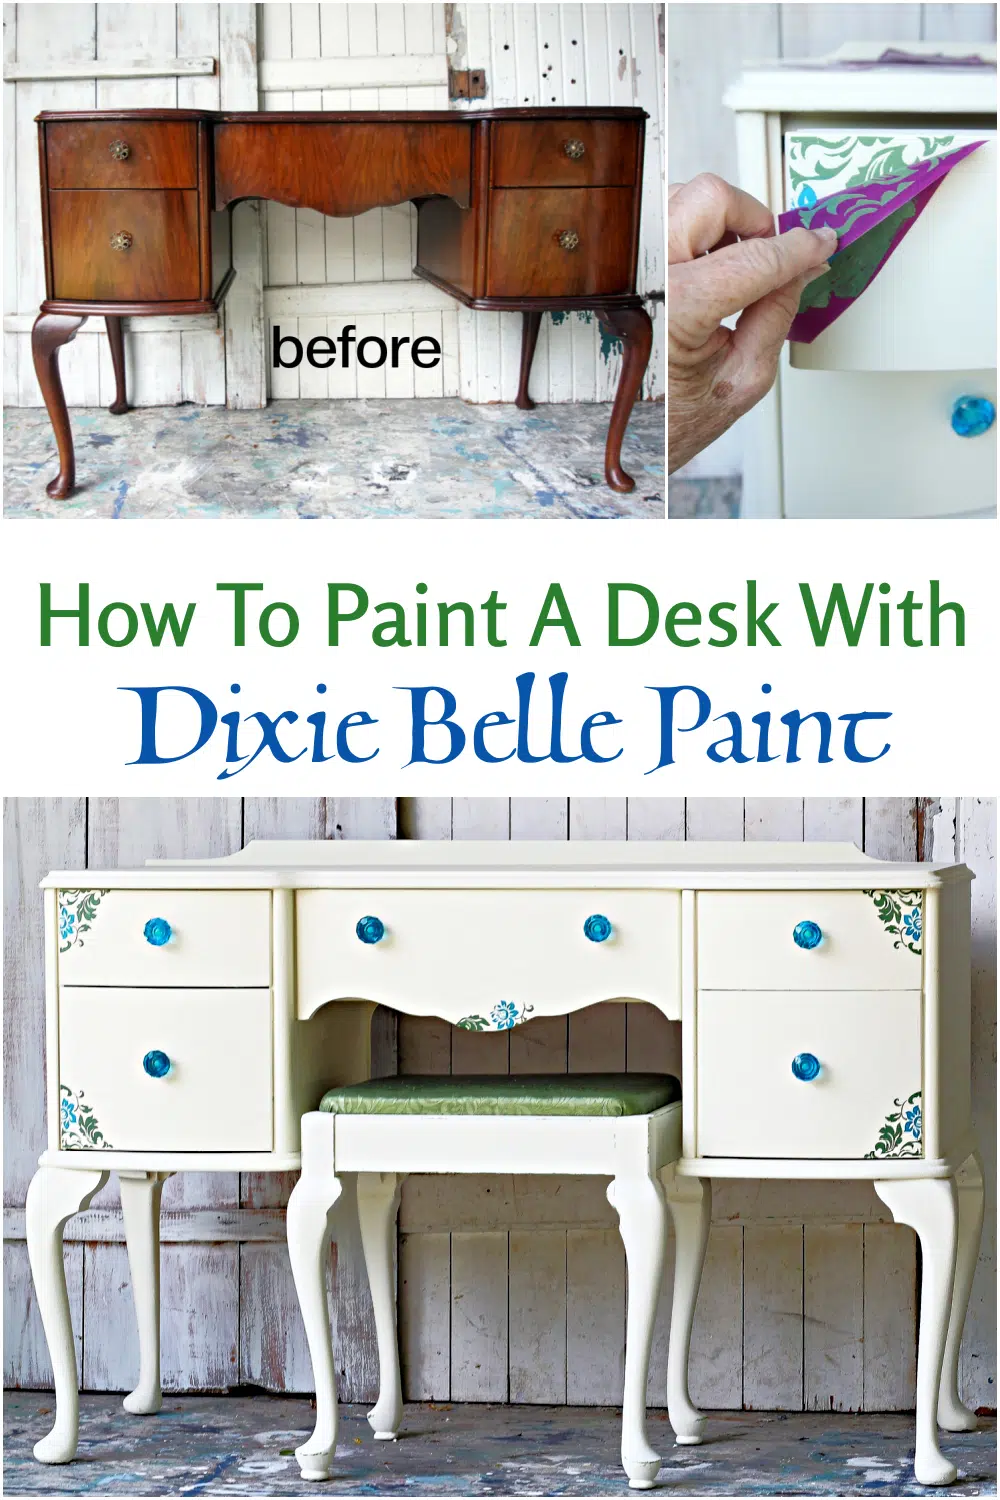 Create a Marble Paint Pour - Dixie Belle Paint Company